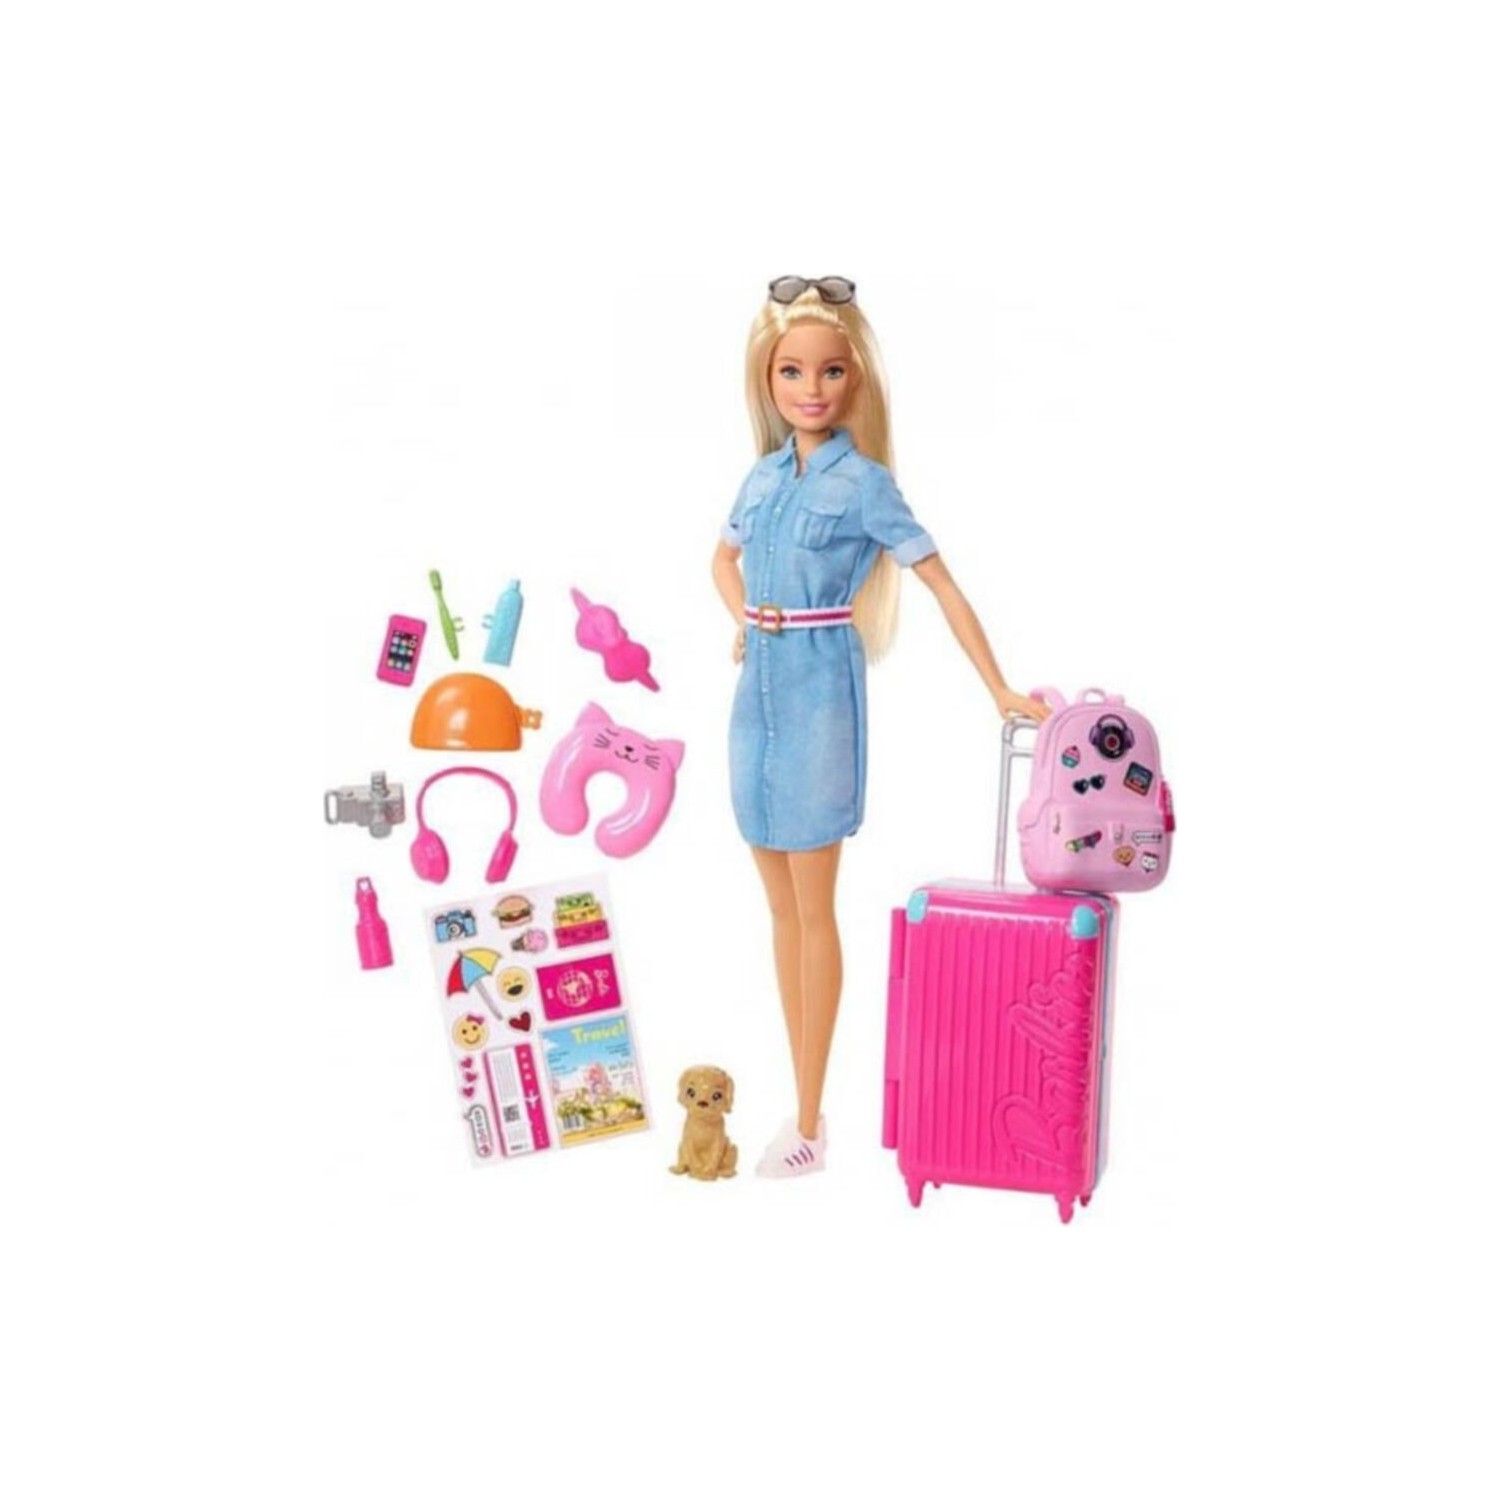 Игровой набор Barbie путешественница с питомцем GTN52 игровой набор barbie home accessory packs grg56